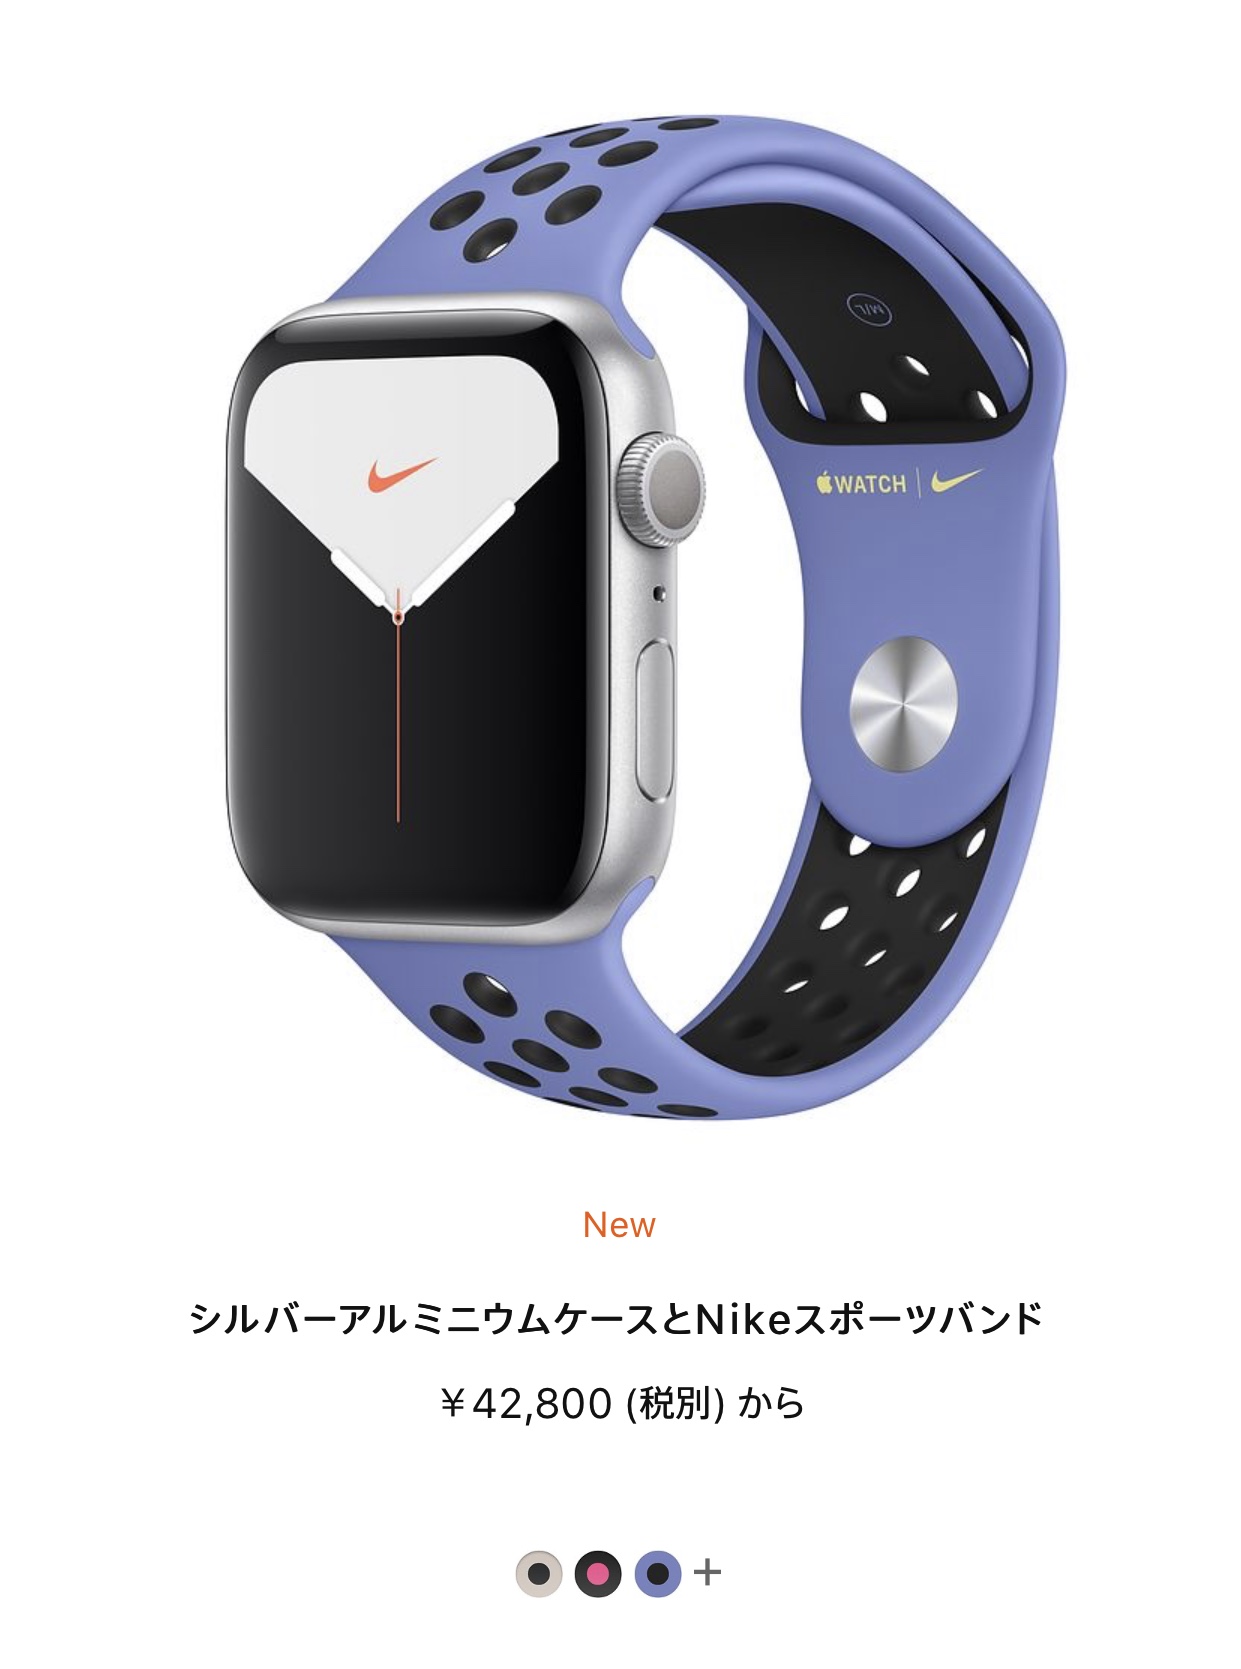 Apple Watch NIKEモデル - Apple コミュニティ